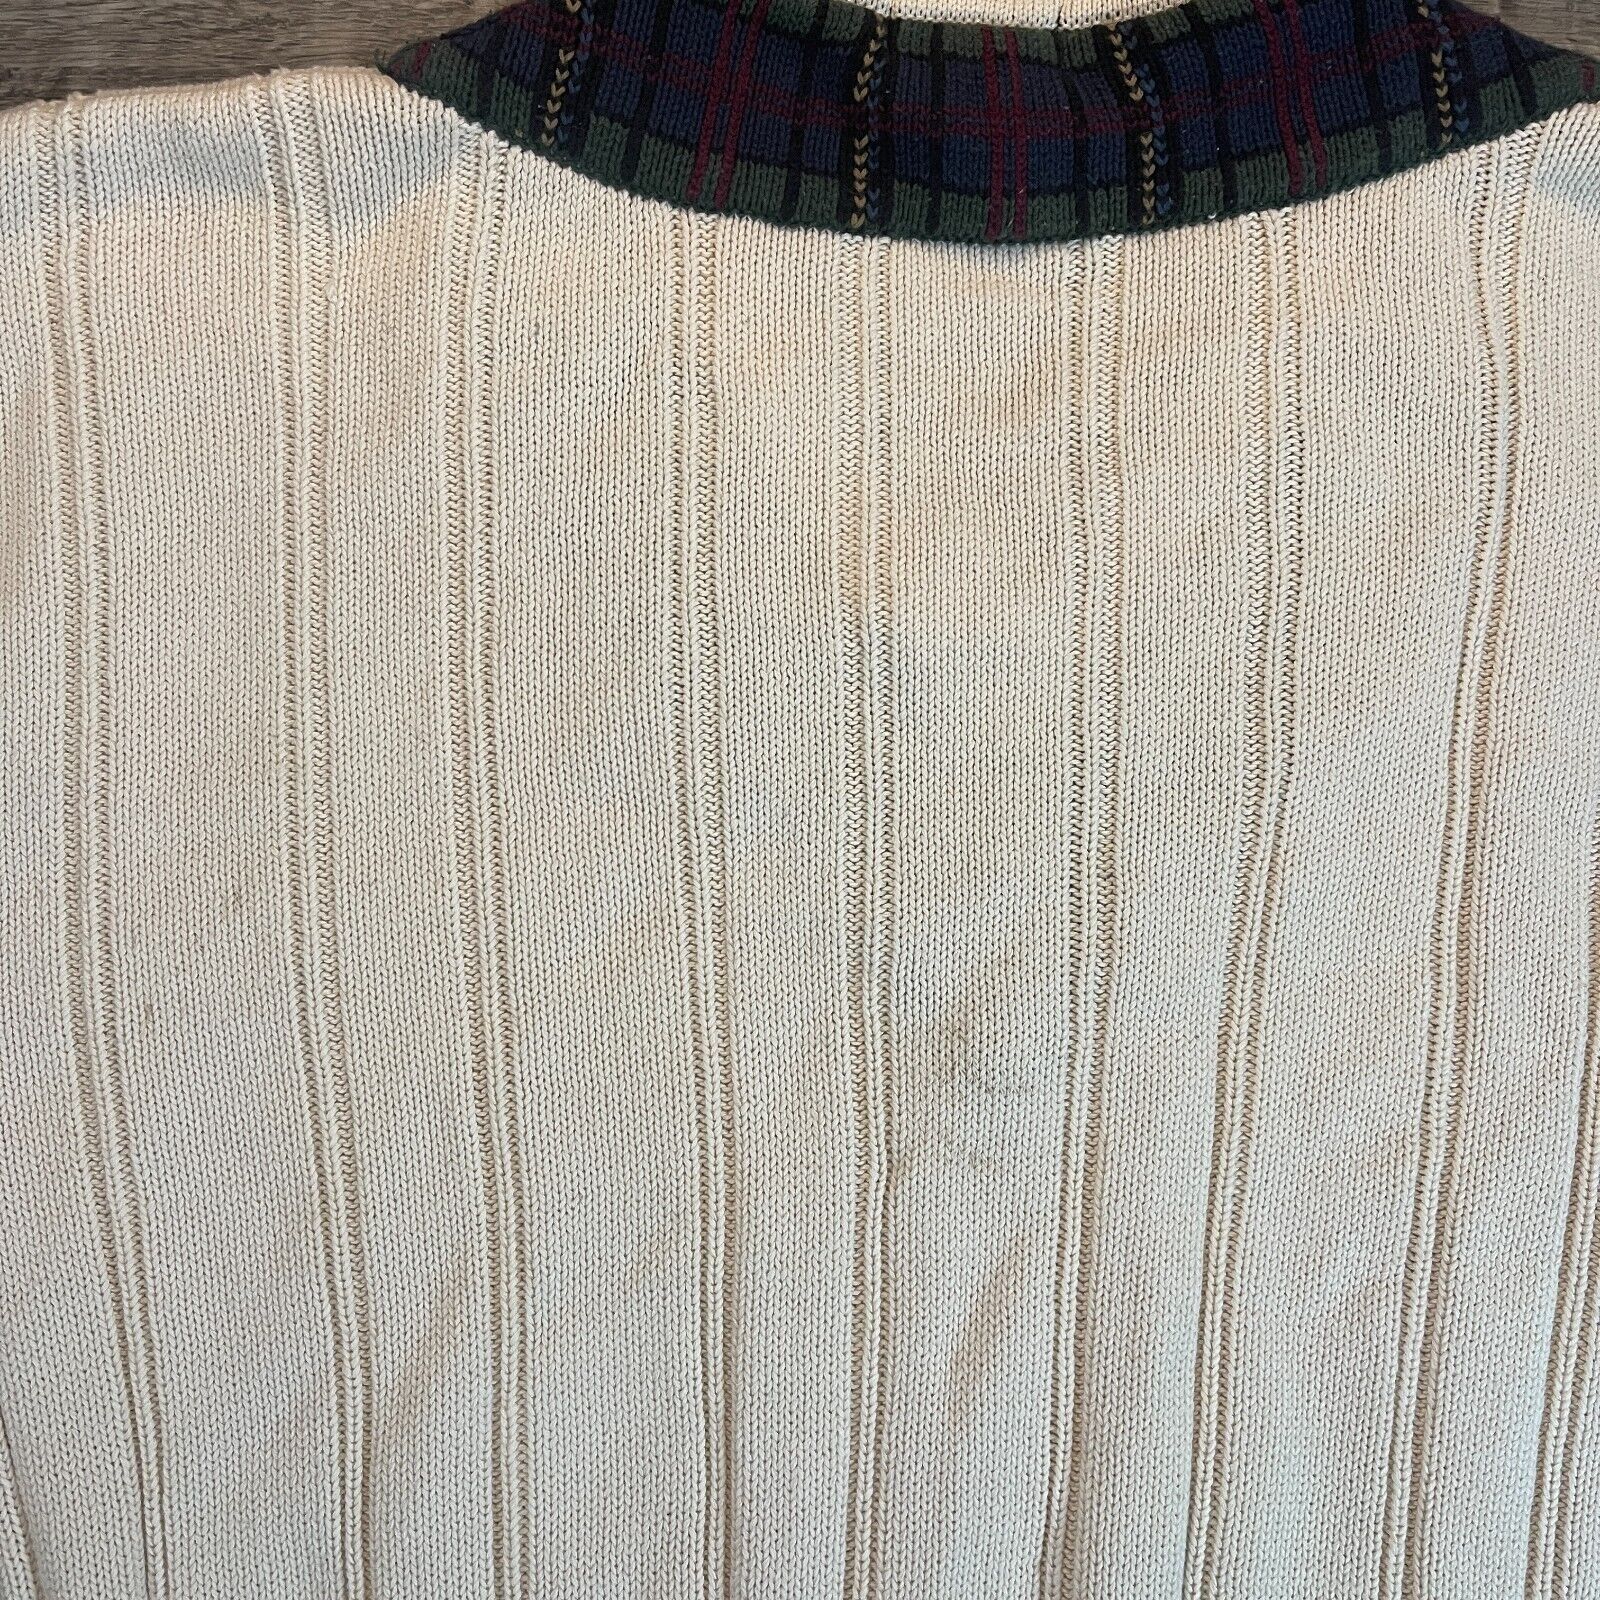 Vintage VTG Preppy Gant Cream Cable Knit Plaid Collar V-Neck Sweater Size US L / EU 52-54 / 3 - 7 Preview